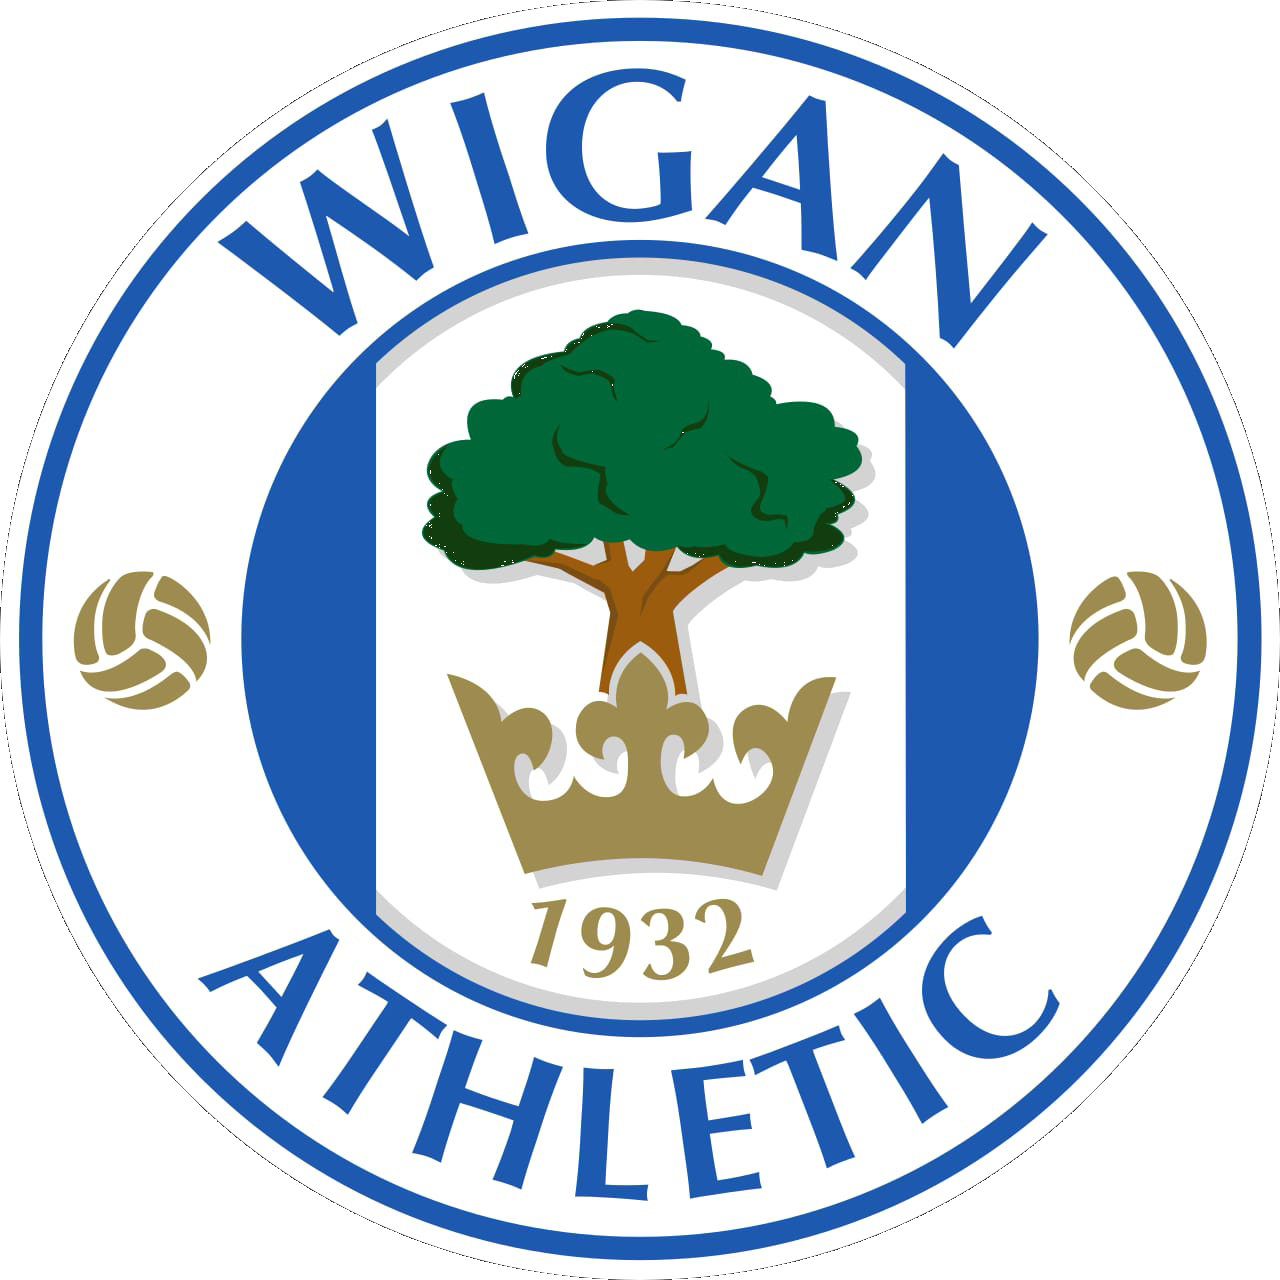 Wigan Athletic Football Club Clinic